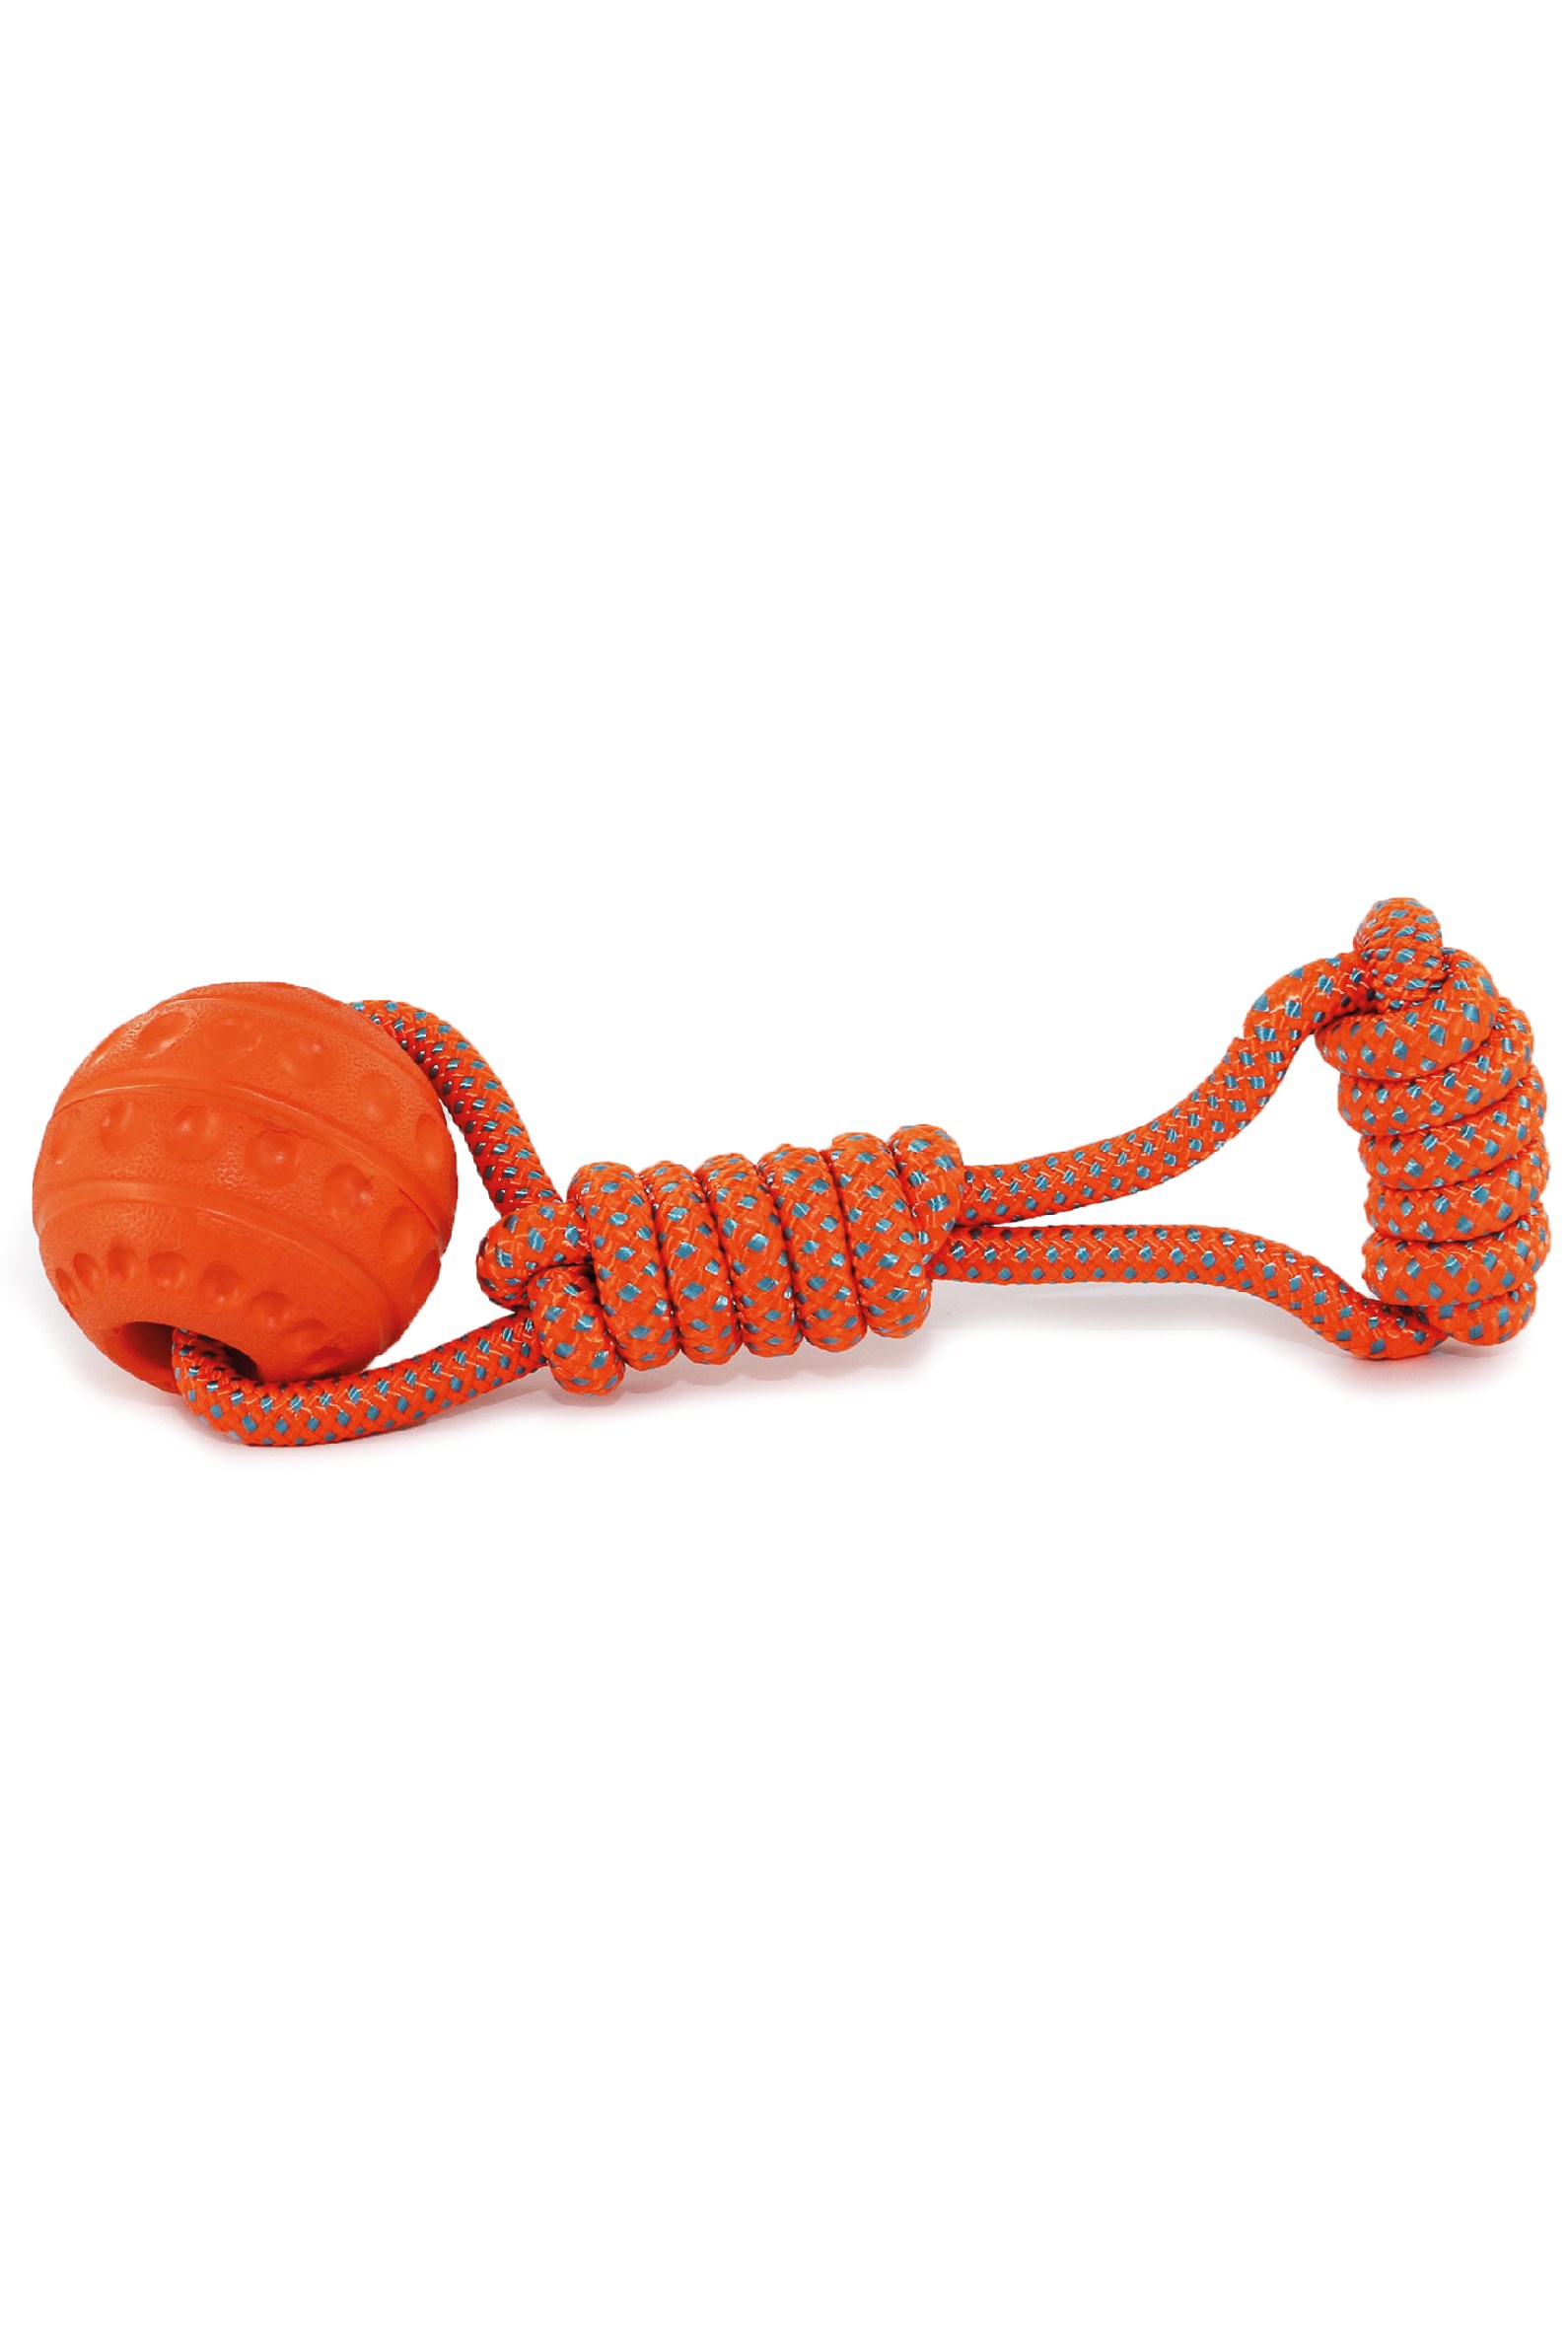 Jawables Ball Tug Dog Toy -